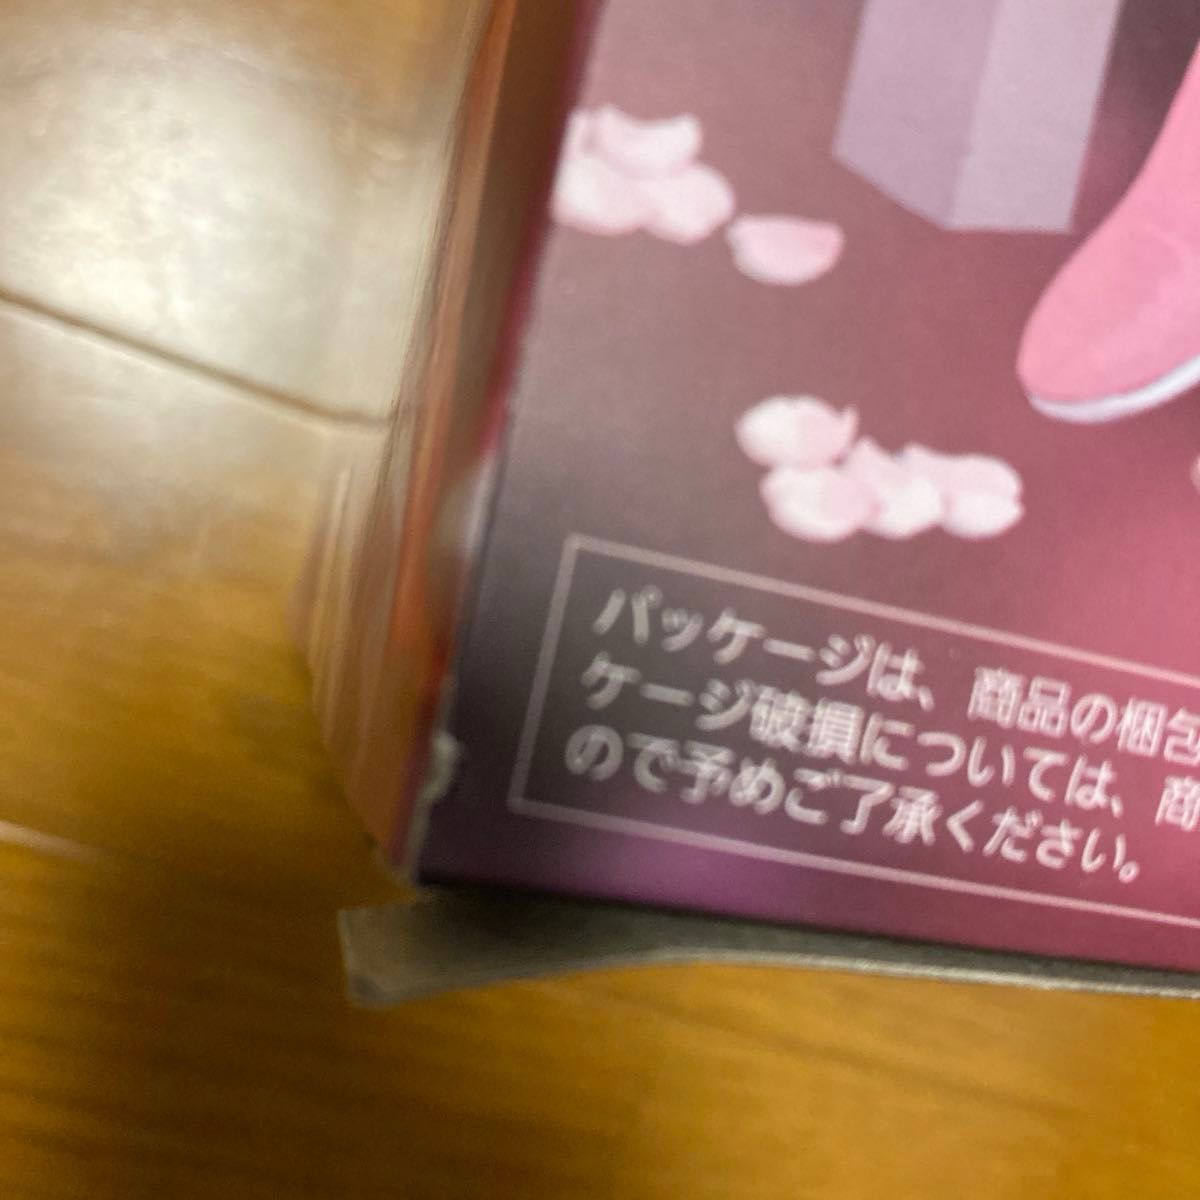 【2体セット】AMP 桜ミク 桜提灯 フィギュア